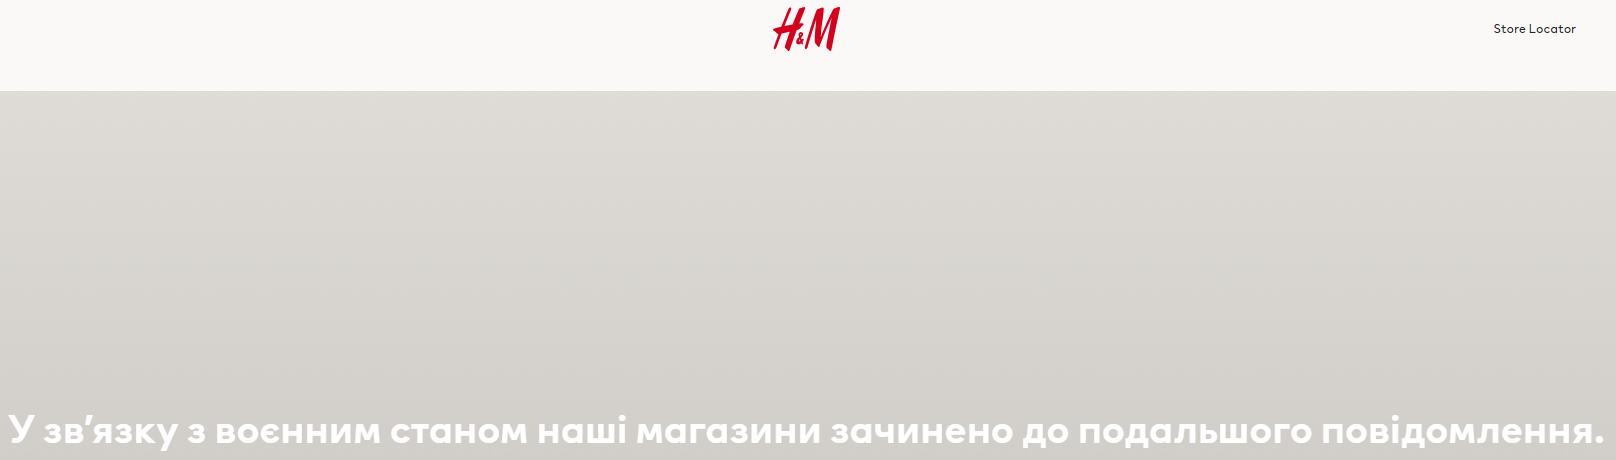 Коли Zara, H&M, IKEA запрацюють в Україні. Правда і чутки про повернення брендів